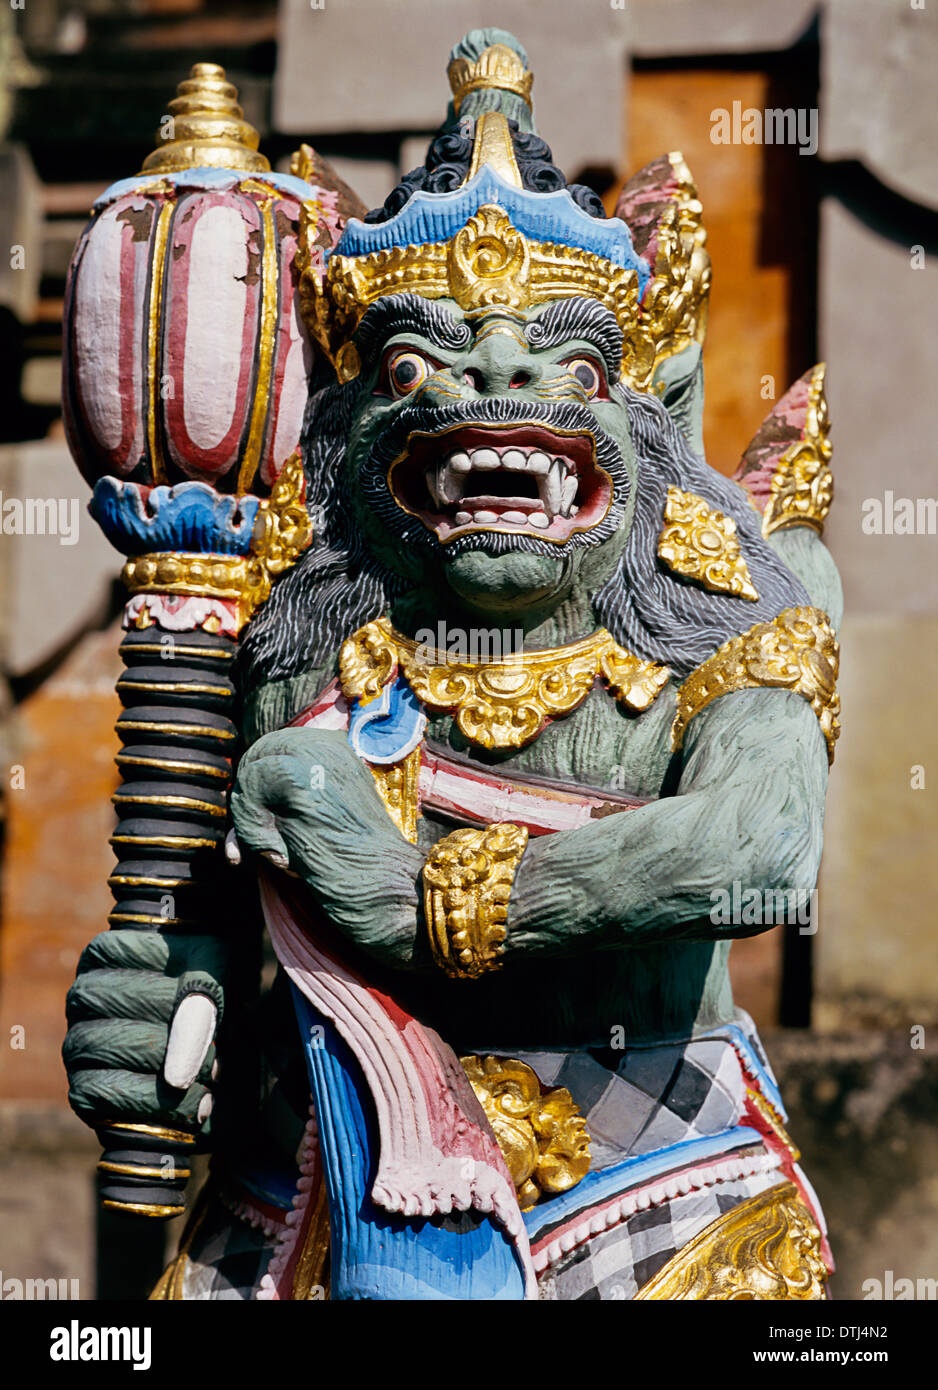 Dettaglio della statua in Rudana Art Museum, Bali, Indonesia Foto Stock